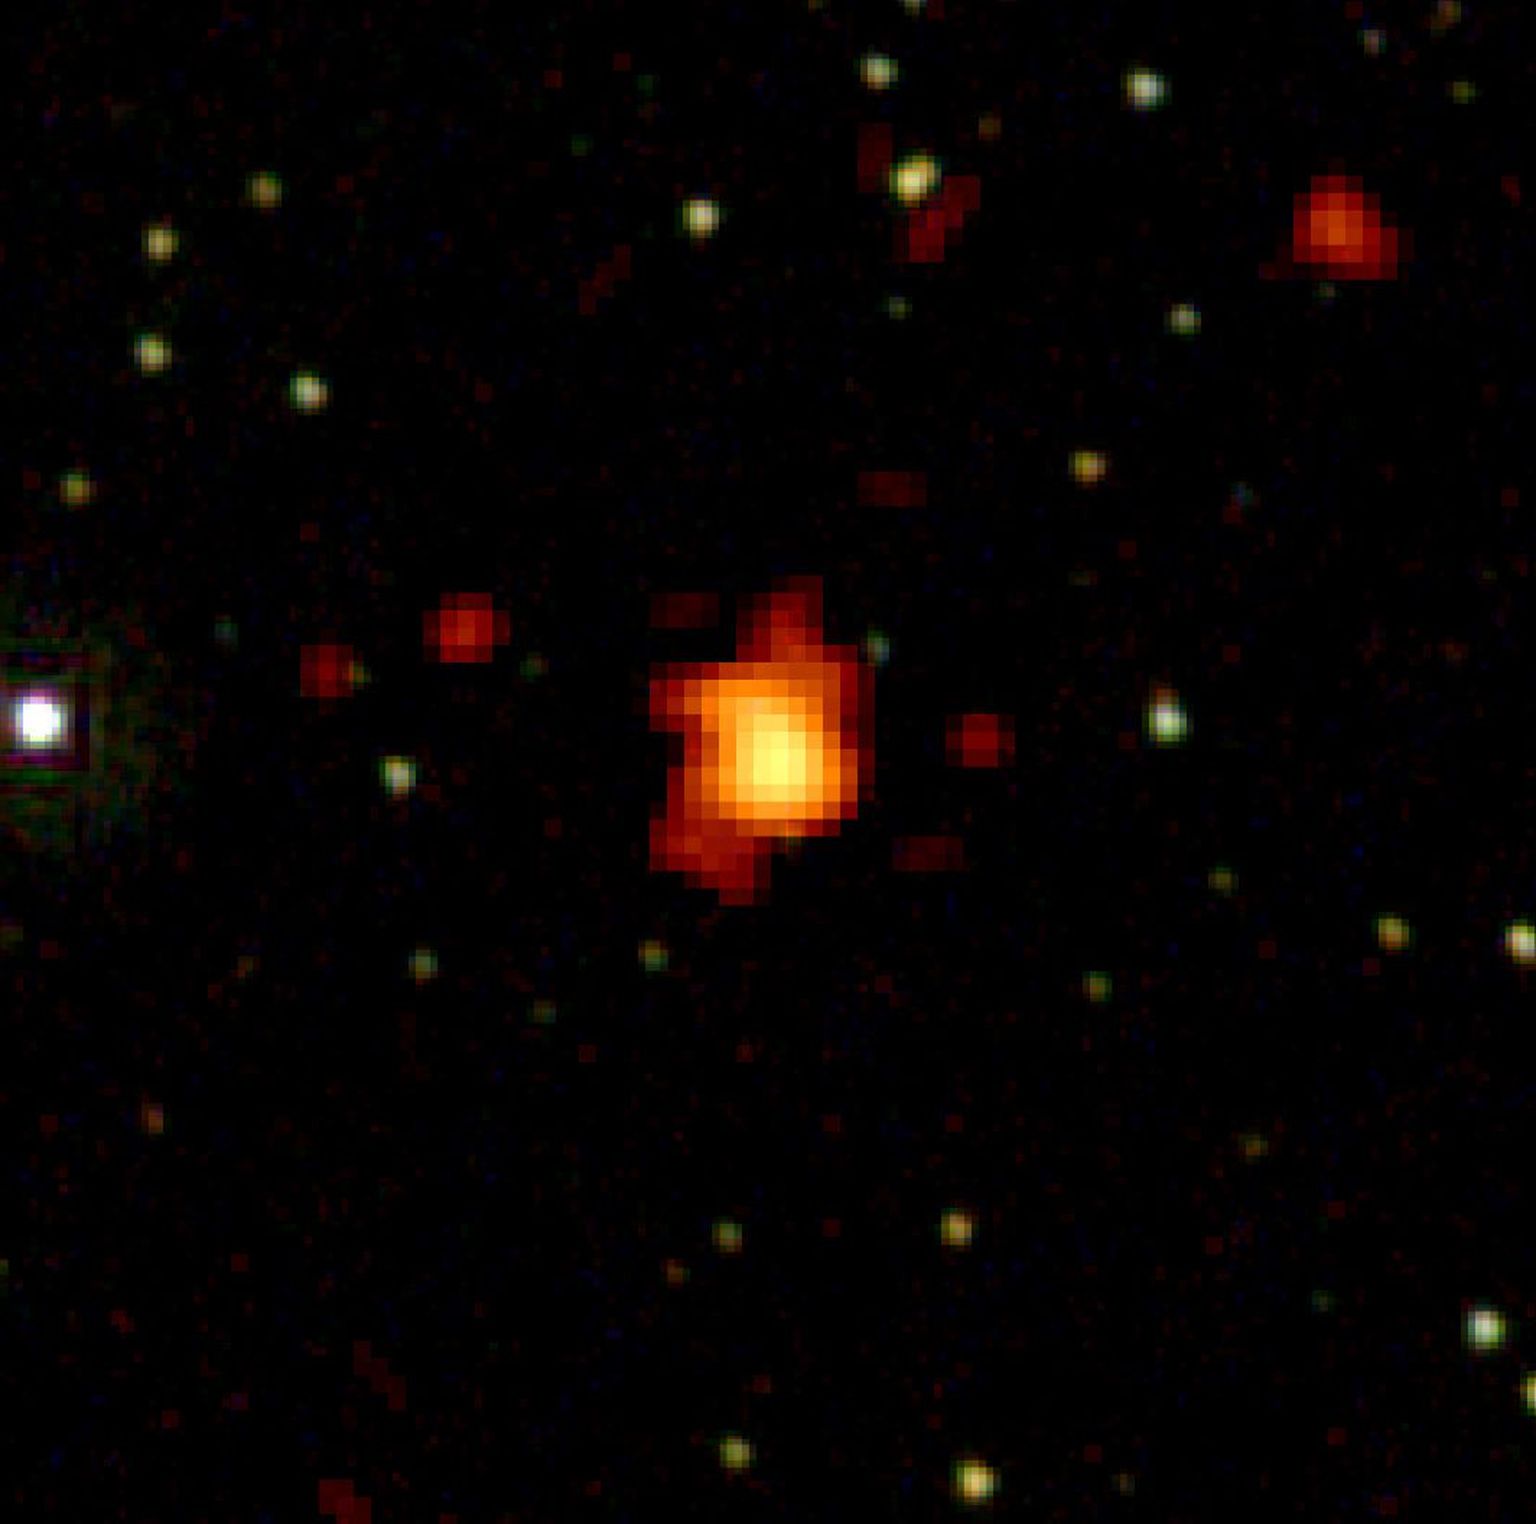 Astronoomid avastasid kaugeima kosmilise sündmuse - 13 miljardi valgusaasta kaugusel toimunud gammapurske